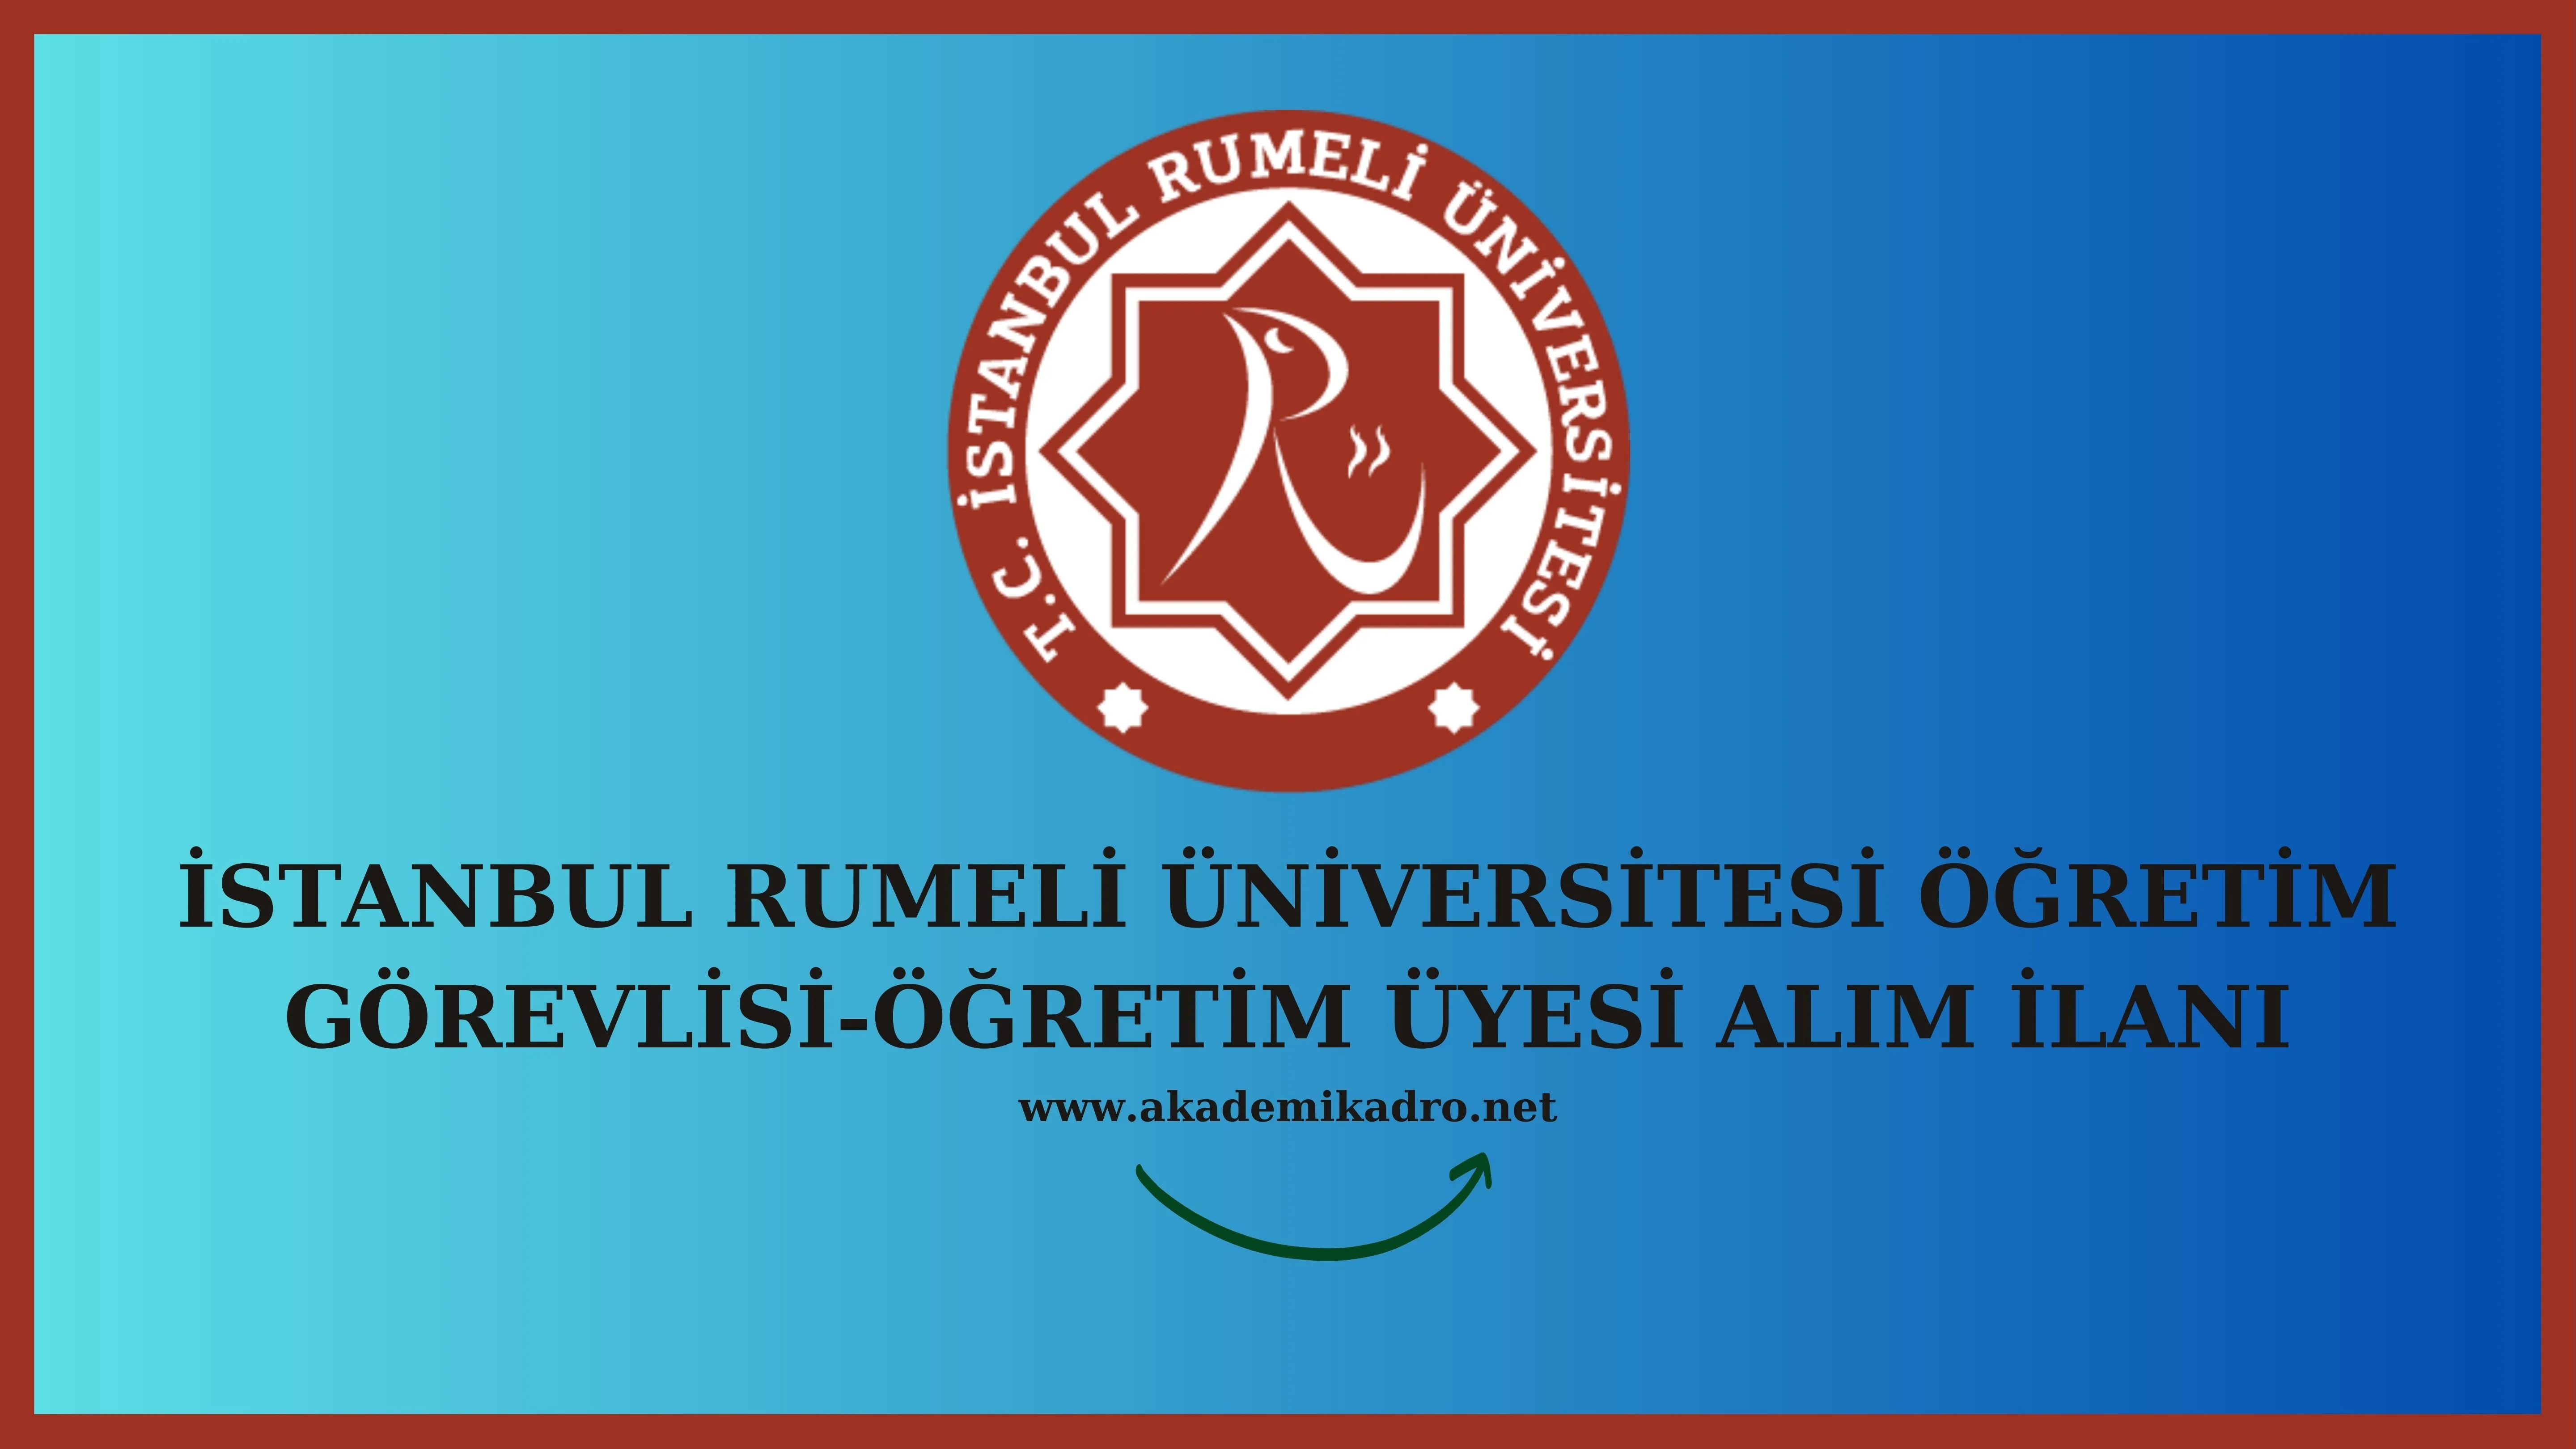 İstanbul Rumeli Üniversitesi 7 Öğretim görevlisi ve çeşitli branşlarda 11 Öğretim üyesi alacak. Son başvuru tarihi 10 Temmuz 2023.